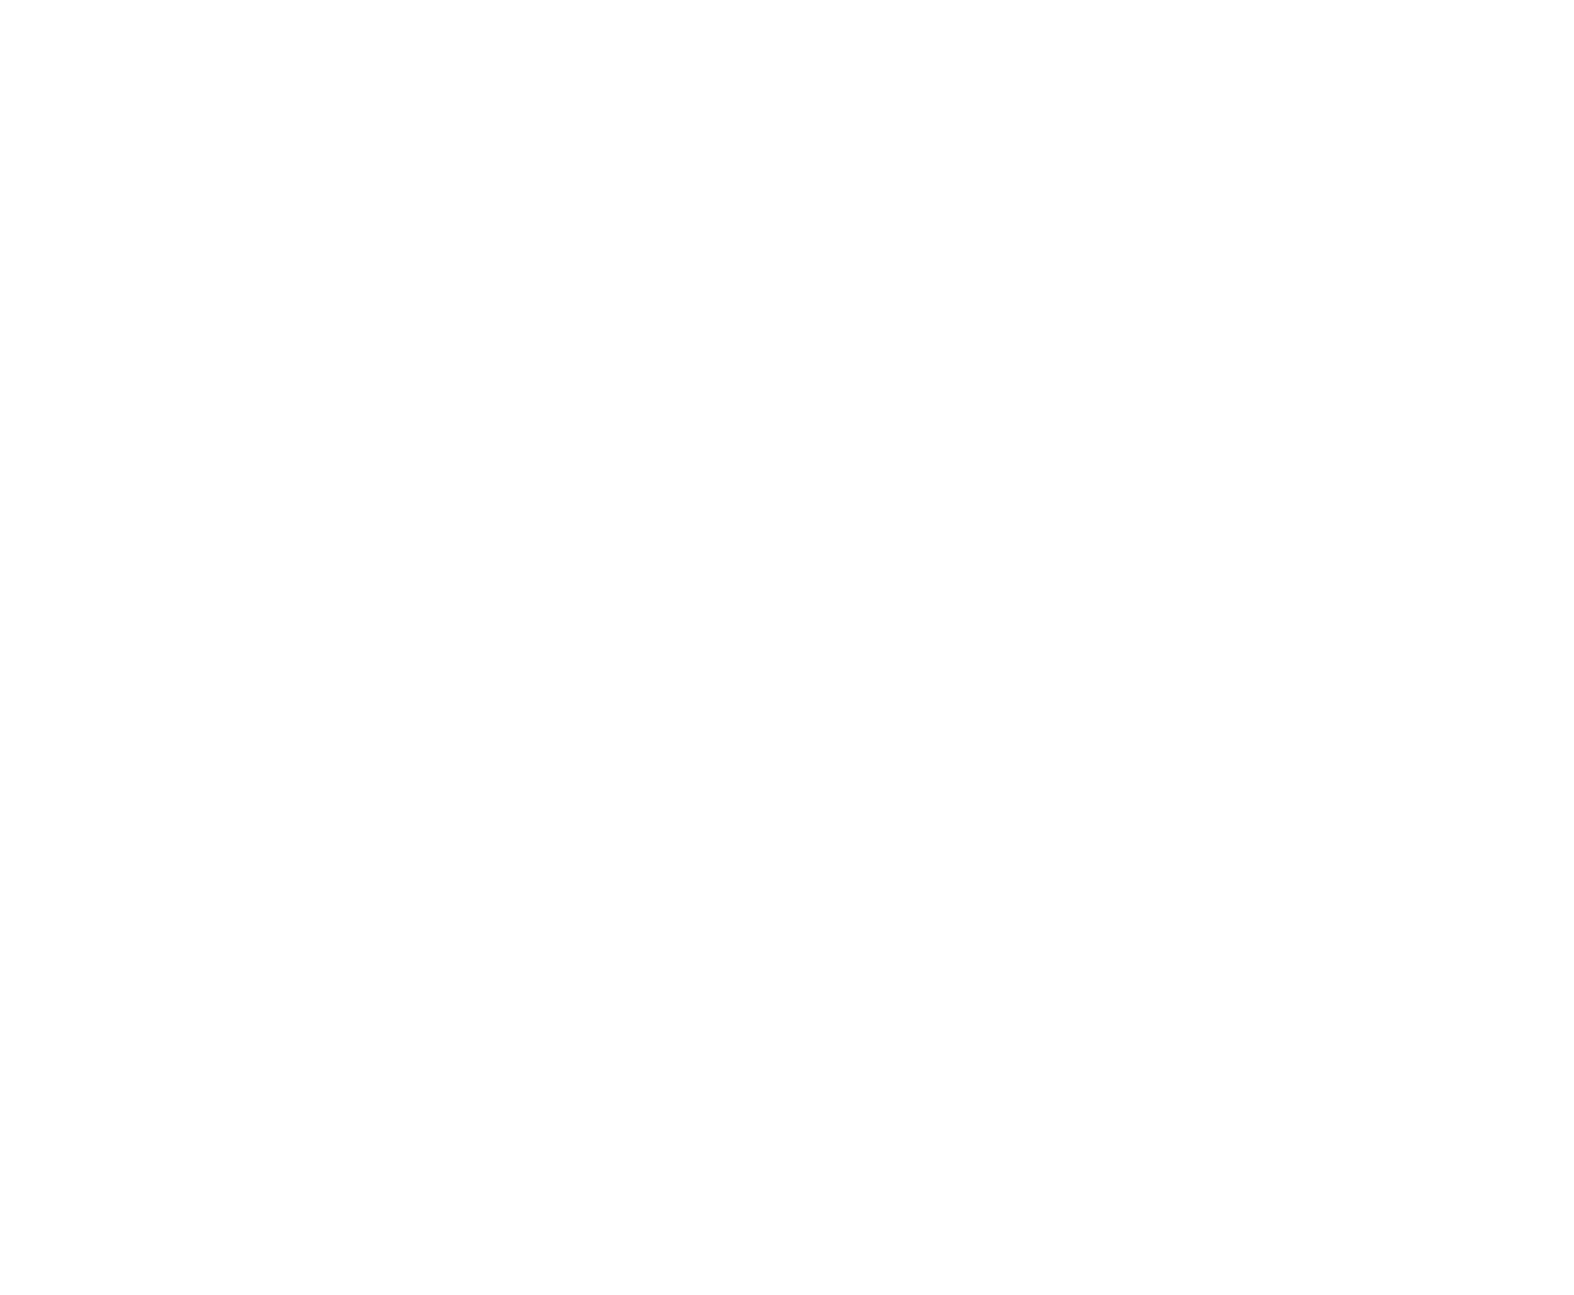 Partner Communications logo pour fonds sombres (PNG transparent)